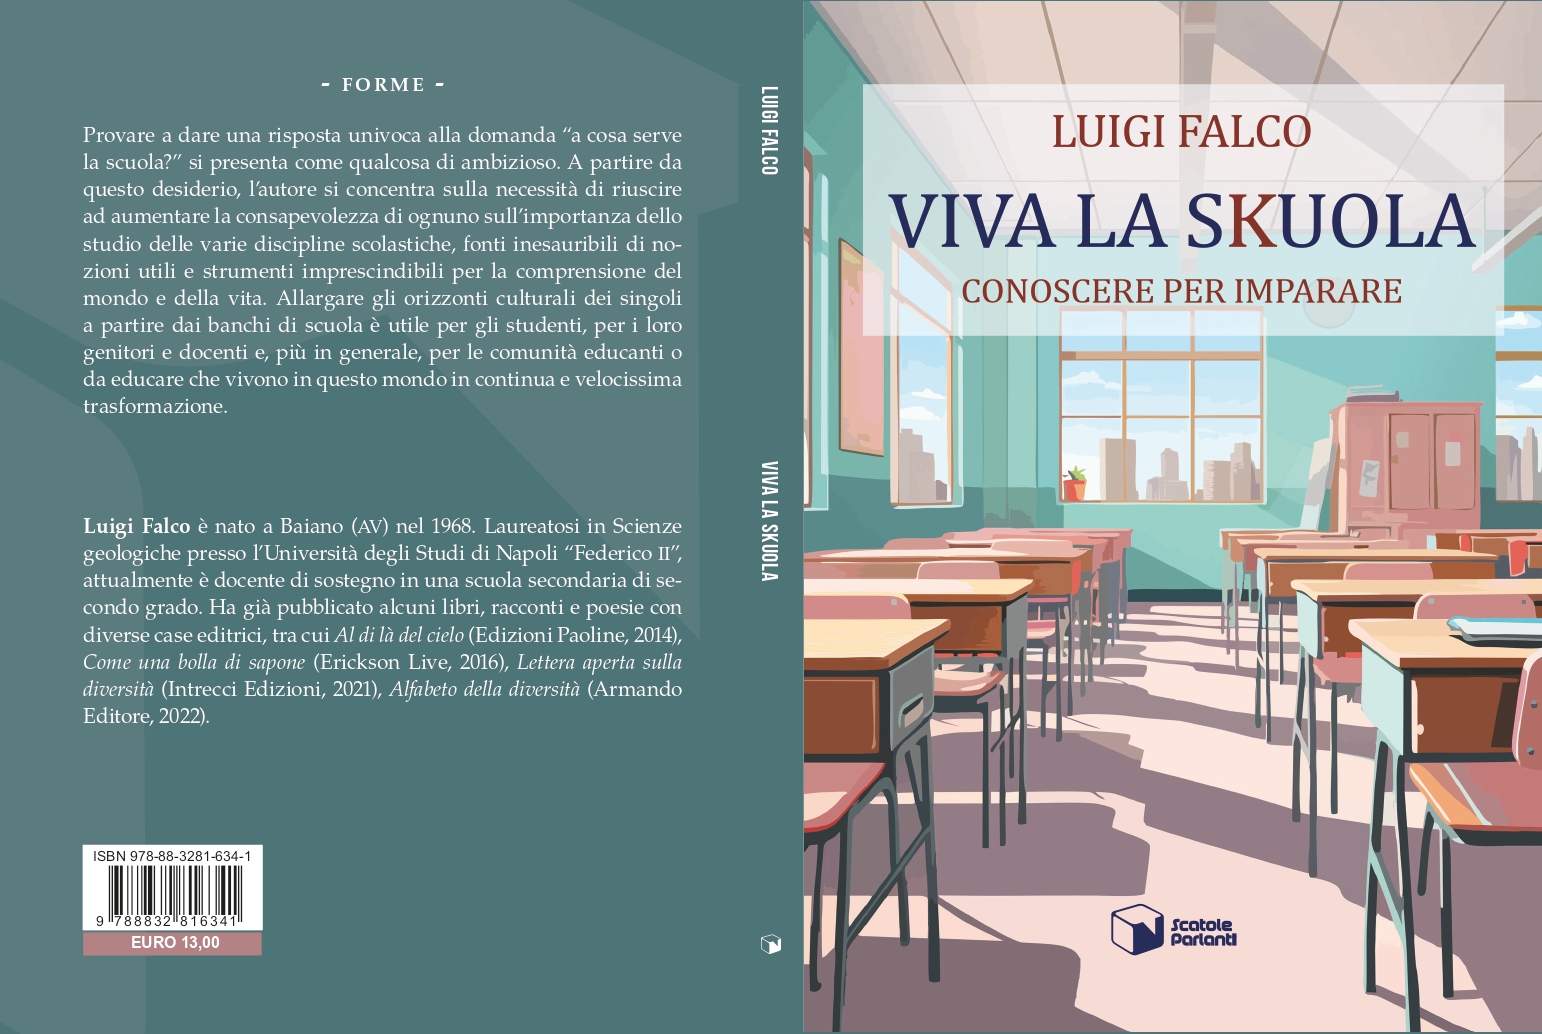 Luigi Falco - Viva la skuola